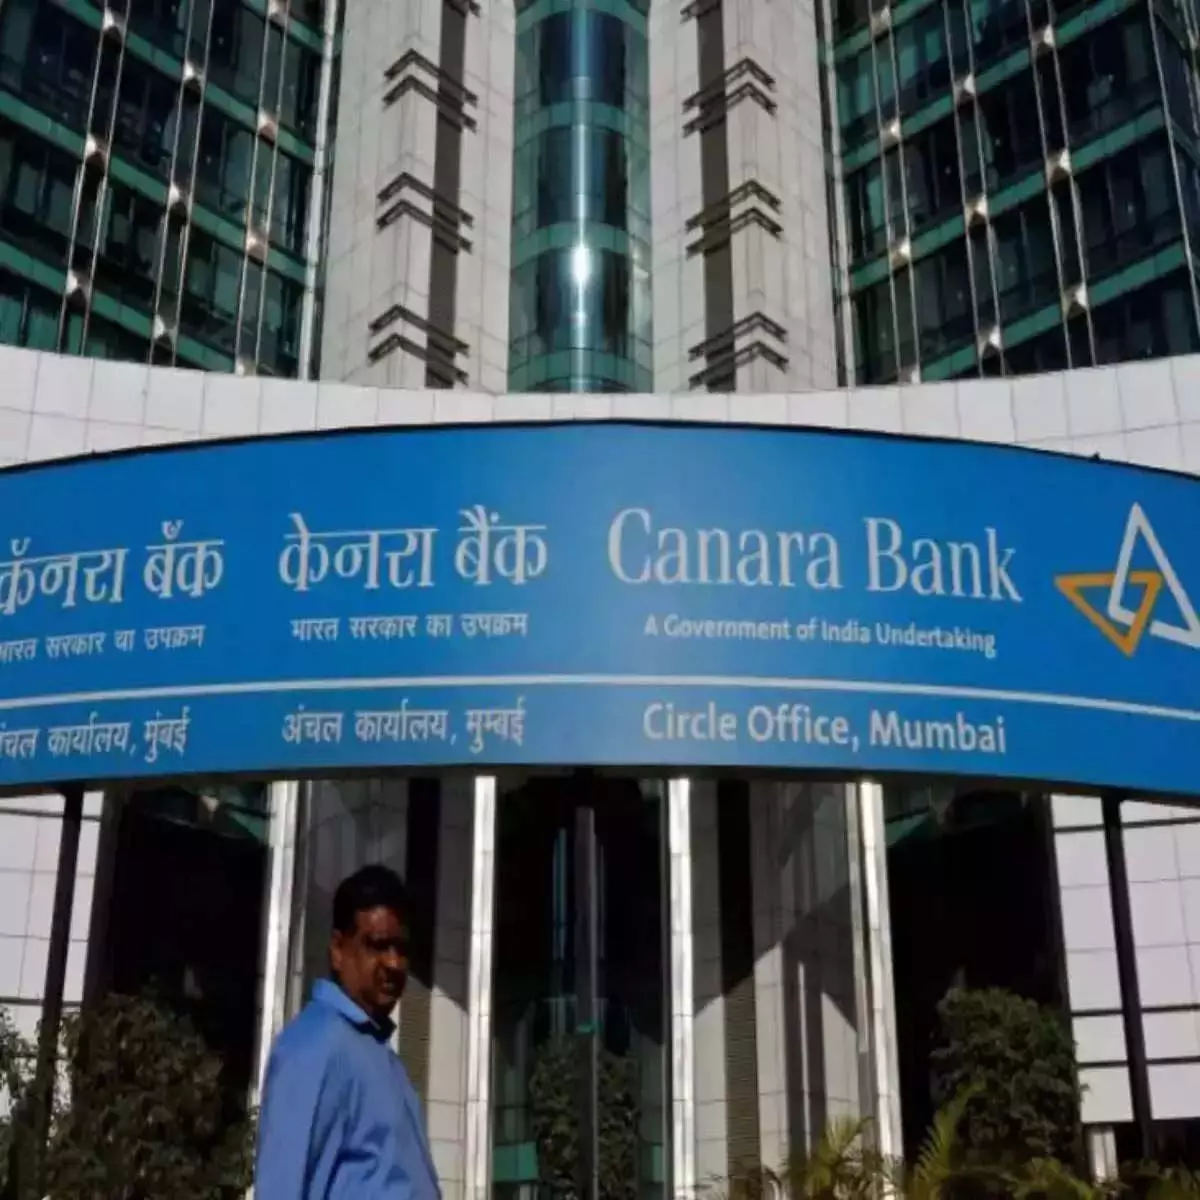 Canara Bank ने इंदिरा कंटेनर के लिए प्रति-बोली आमंत्रित की